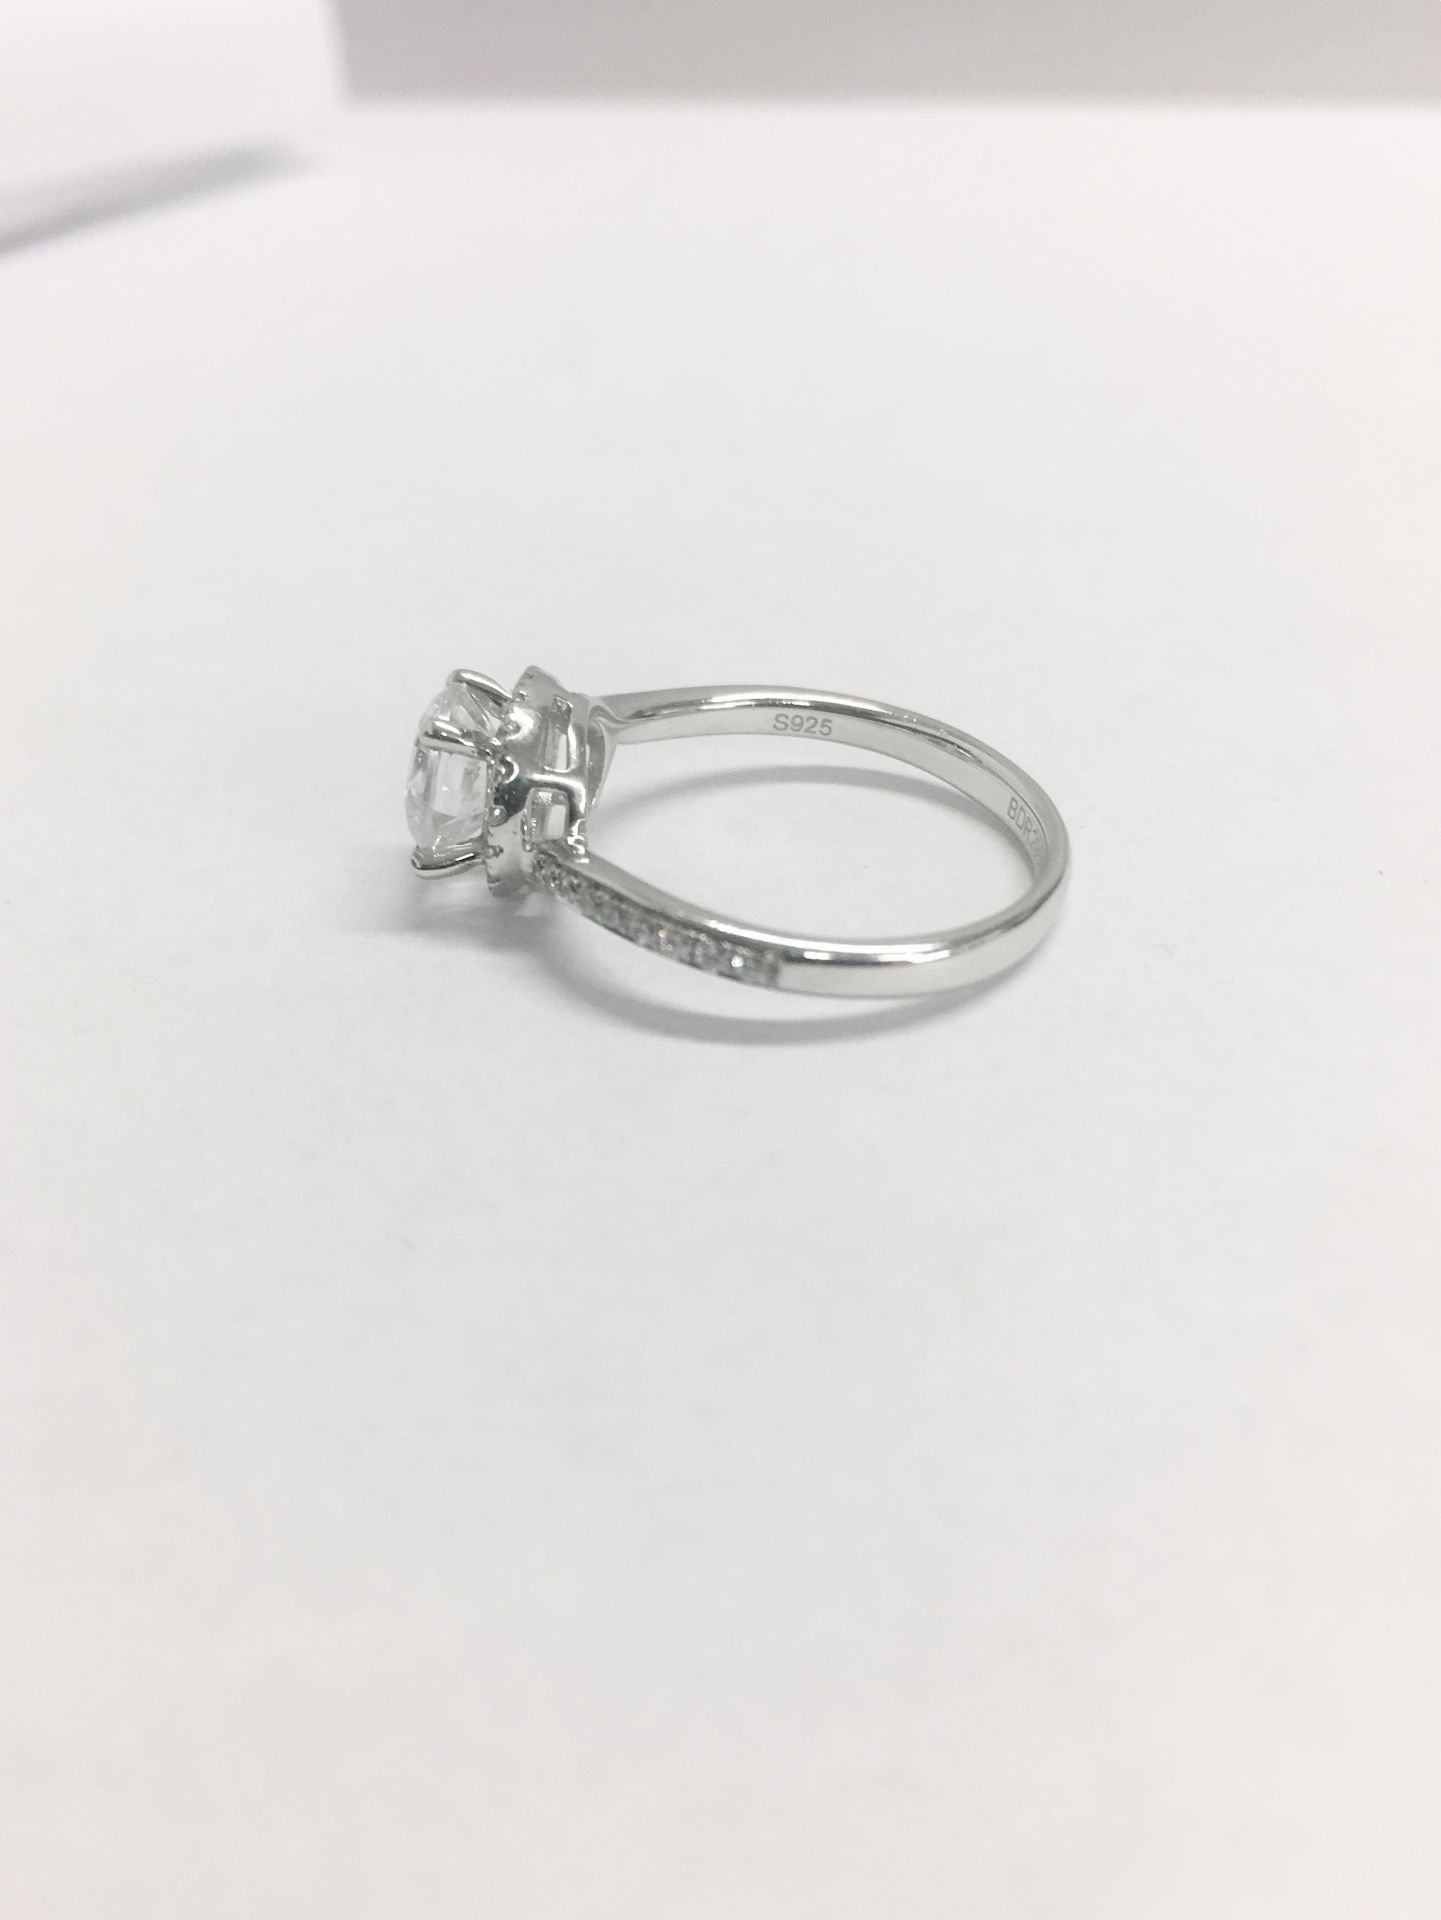 Platinum diamond solitaire ring,0.50ct brilliant cut diamond h colour vs clarity, - Image 3 of 6